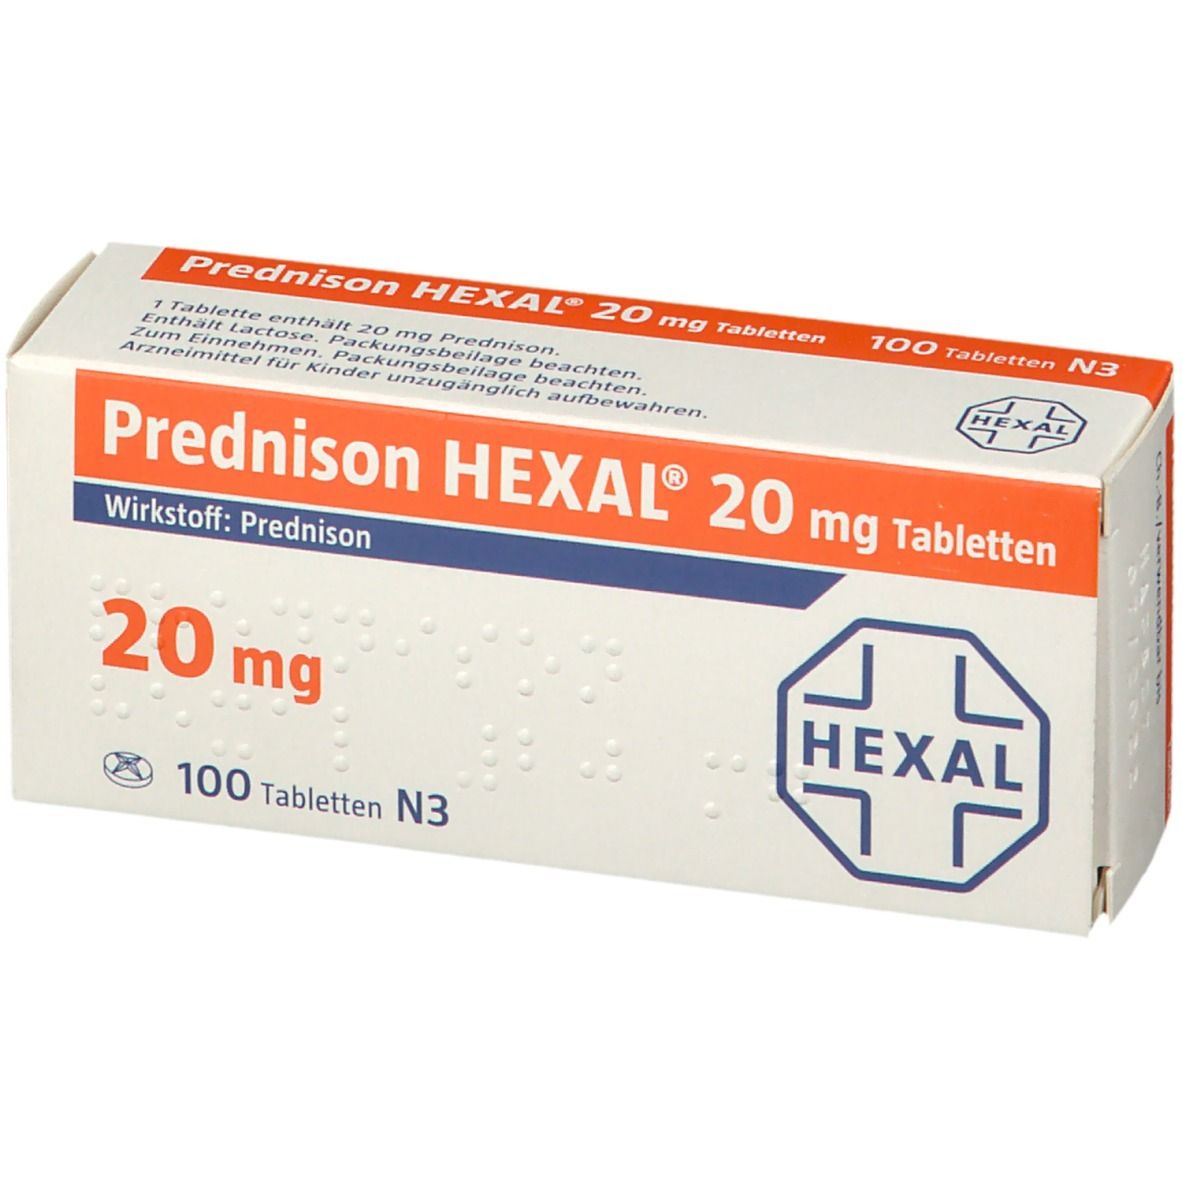 Prednison HEXAL® 20 mg